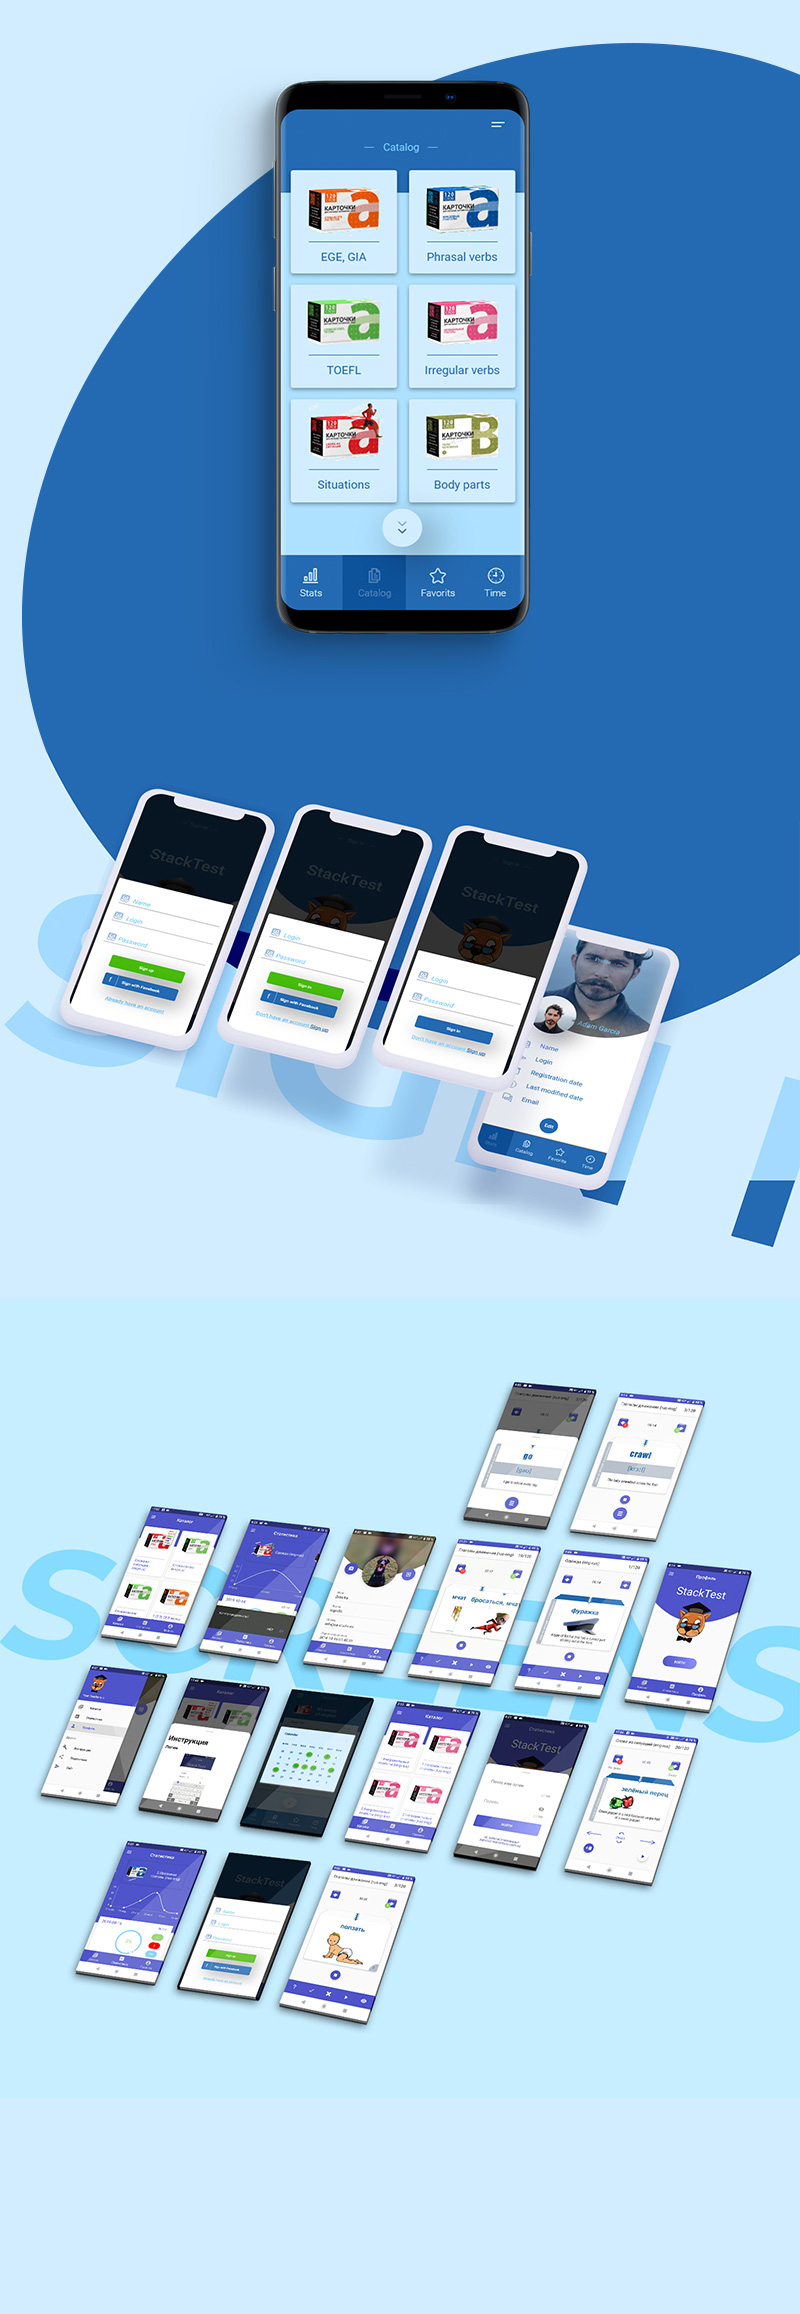 Mobile app - for testing